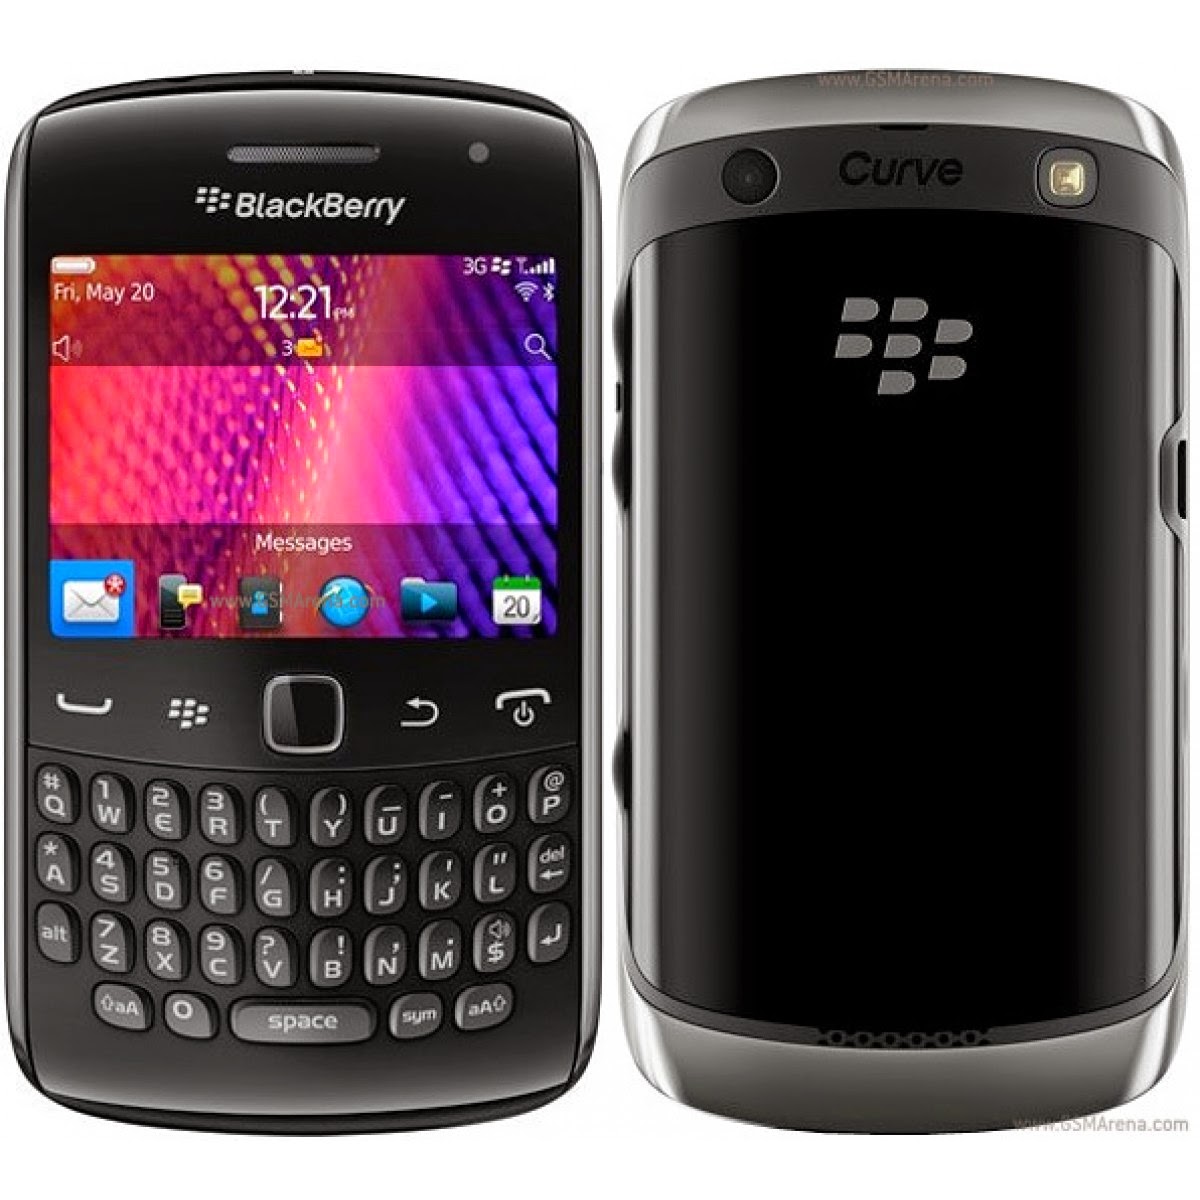 blackberry handheld software v5.0.0.860 multilanguage